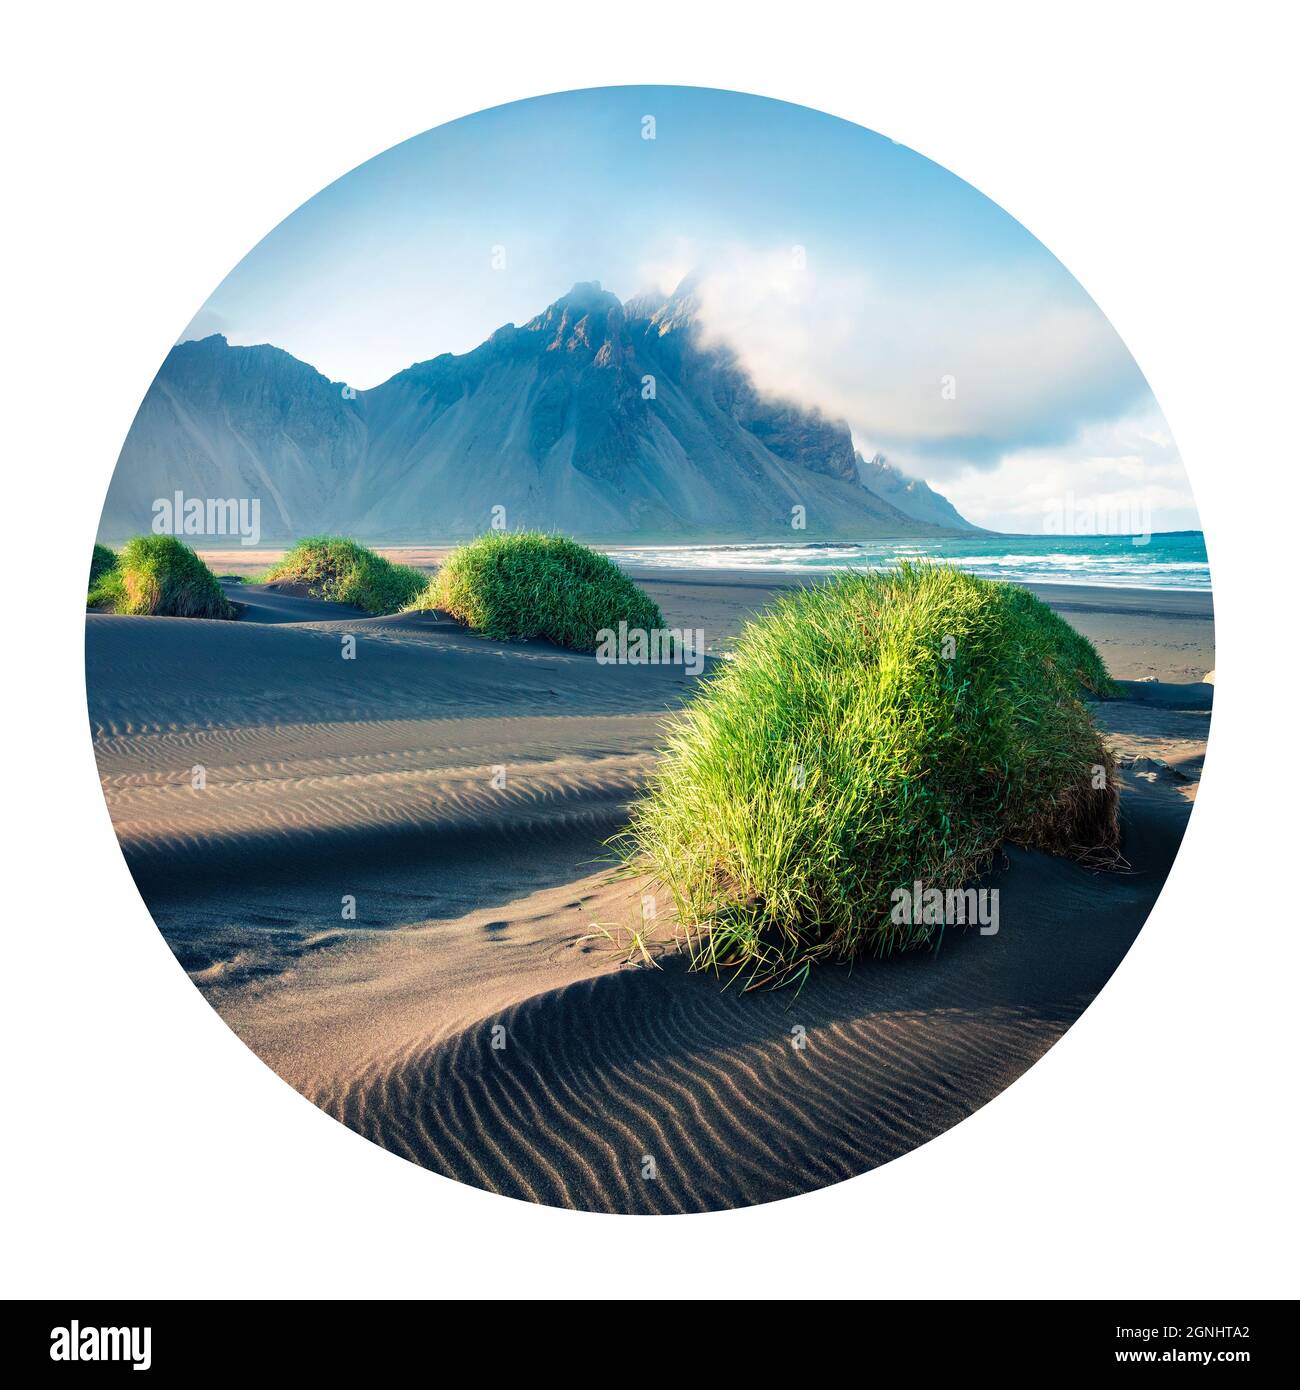 Runde Ikone der Natur mit Landschaft. Schwarze Sanddünen auf der Stokksnes-Landzunge an der südöstlichen isländischen Küste mit Vestrahorn (Batman Mountain) auf b Stockfoto